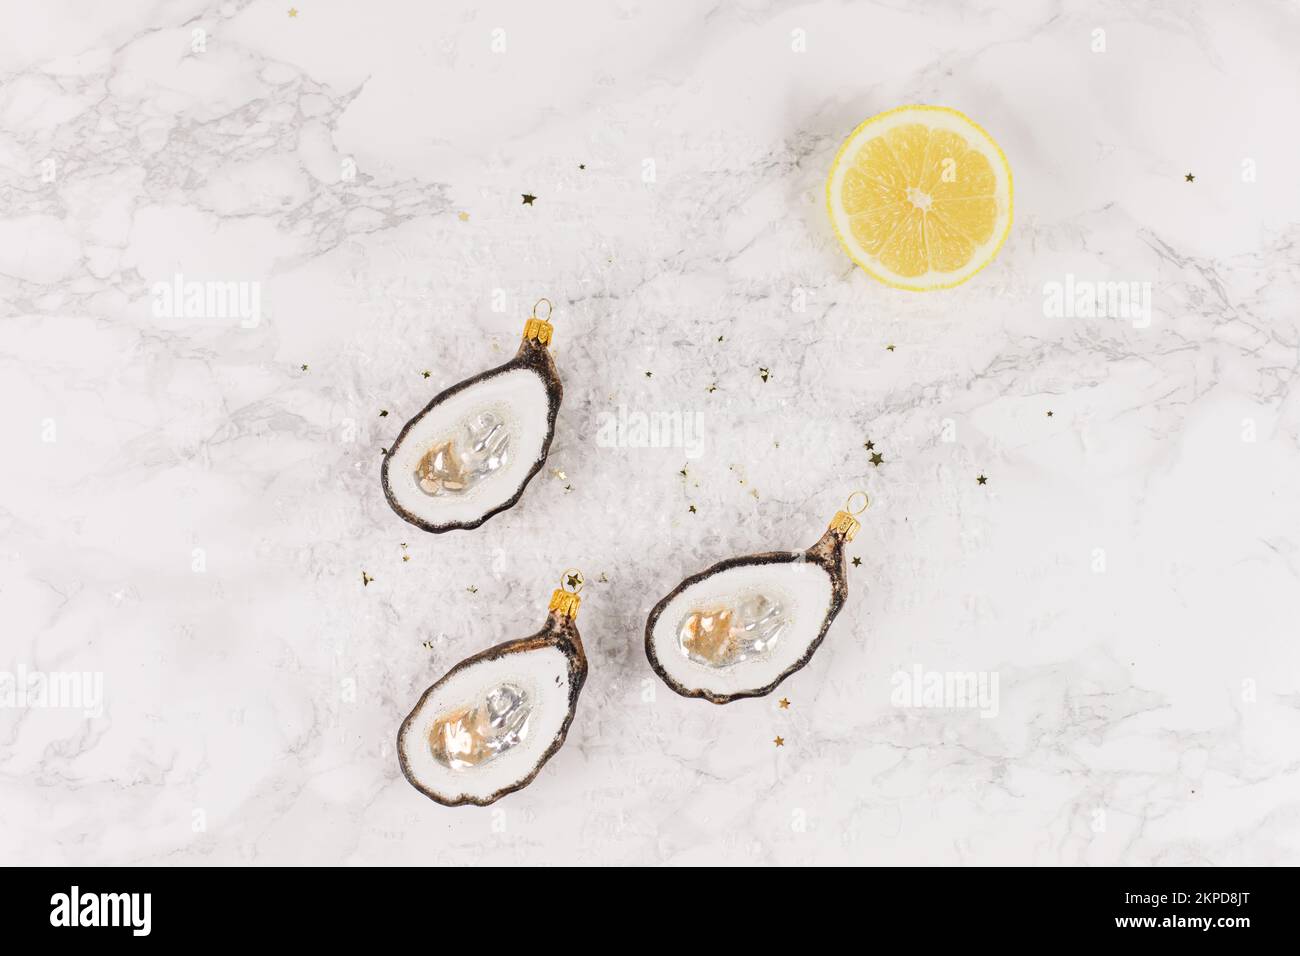 Trois boules d'arbre de Noël en forme d'huître sont couchés sur une table en marbre. Des paillettes, des étoiles et des tranches de citron décorent l'image. Banque D'Images